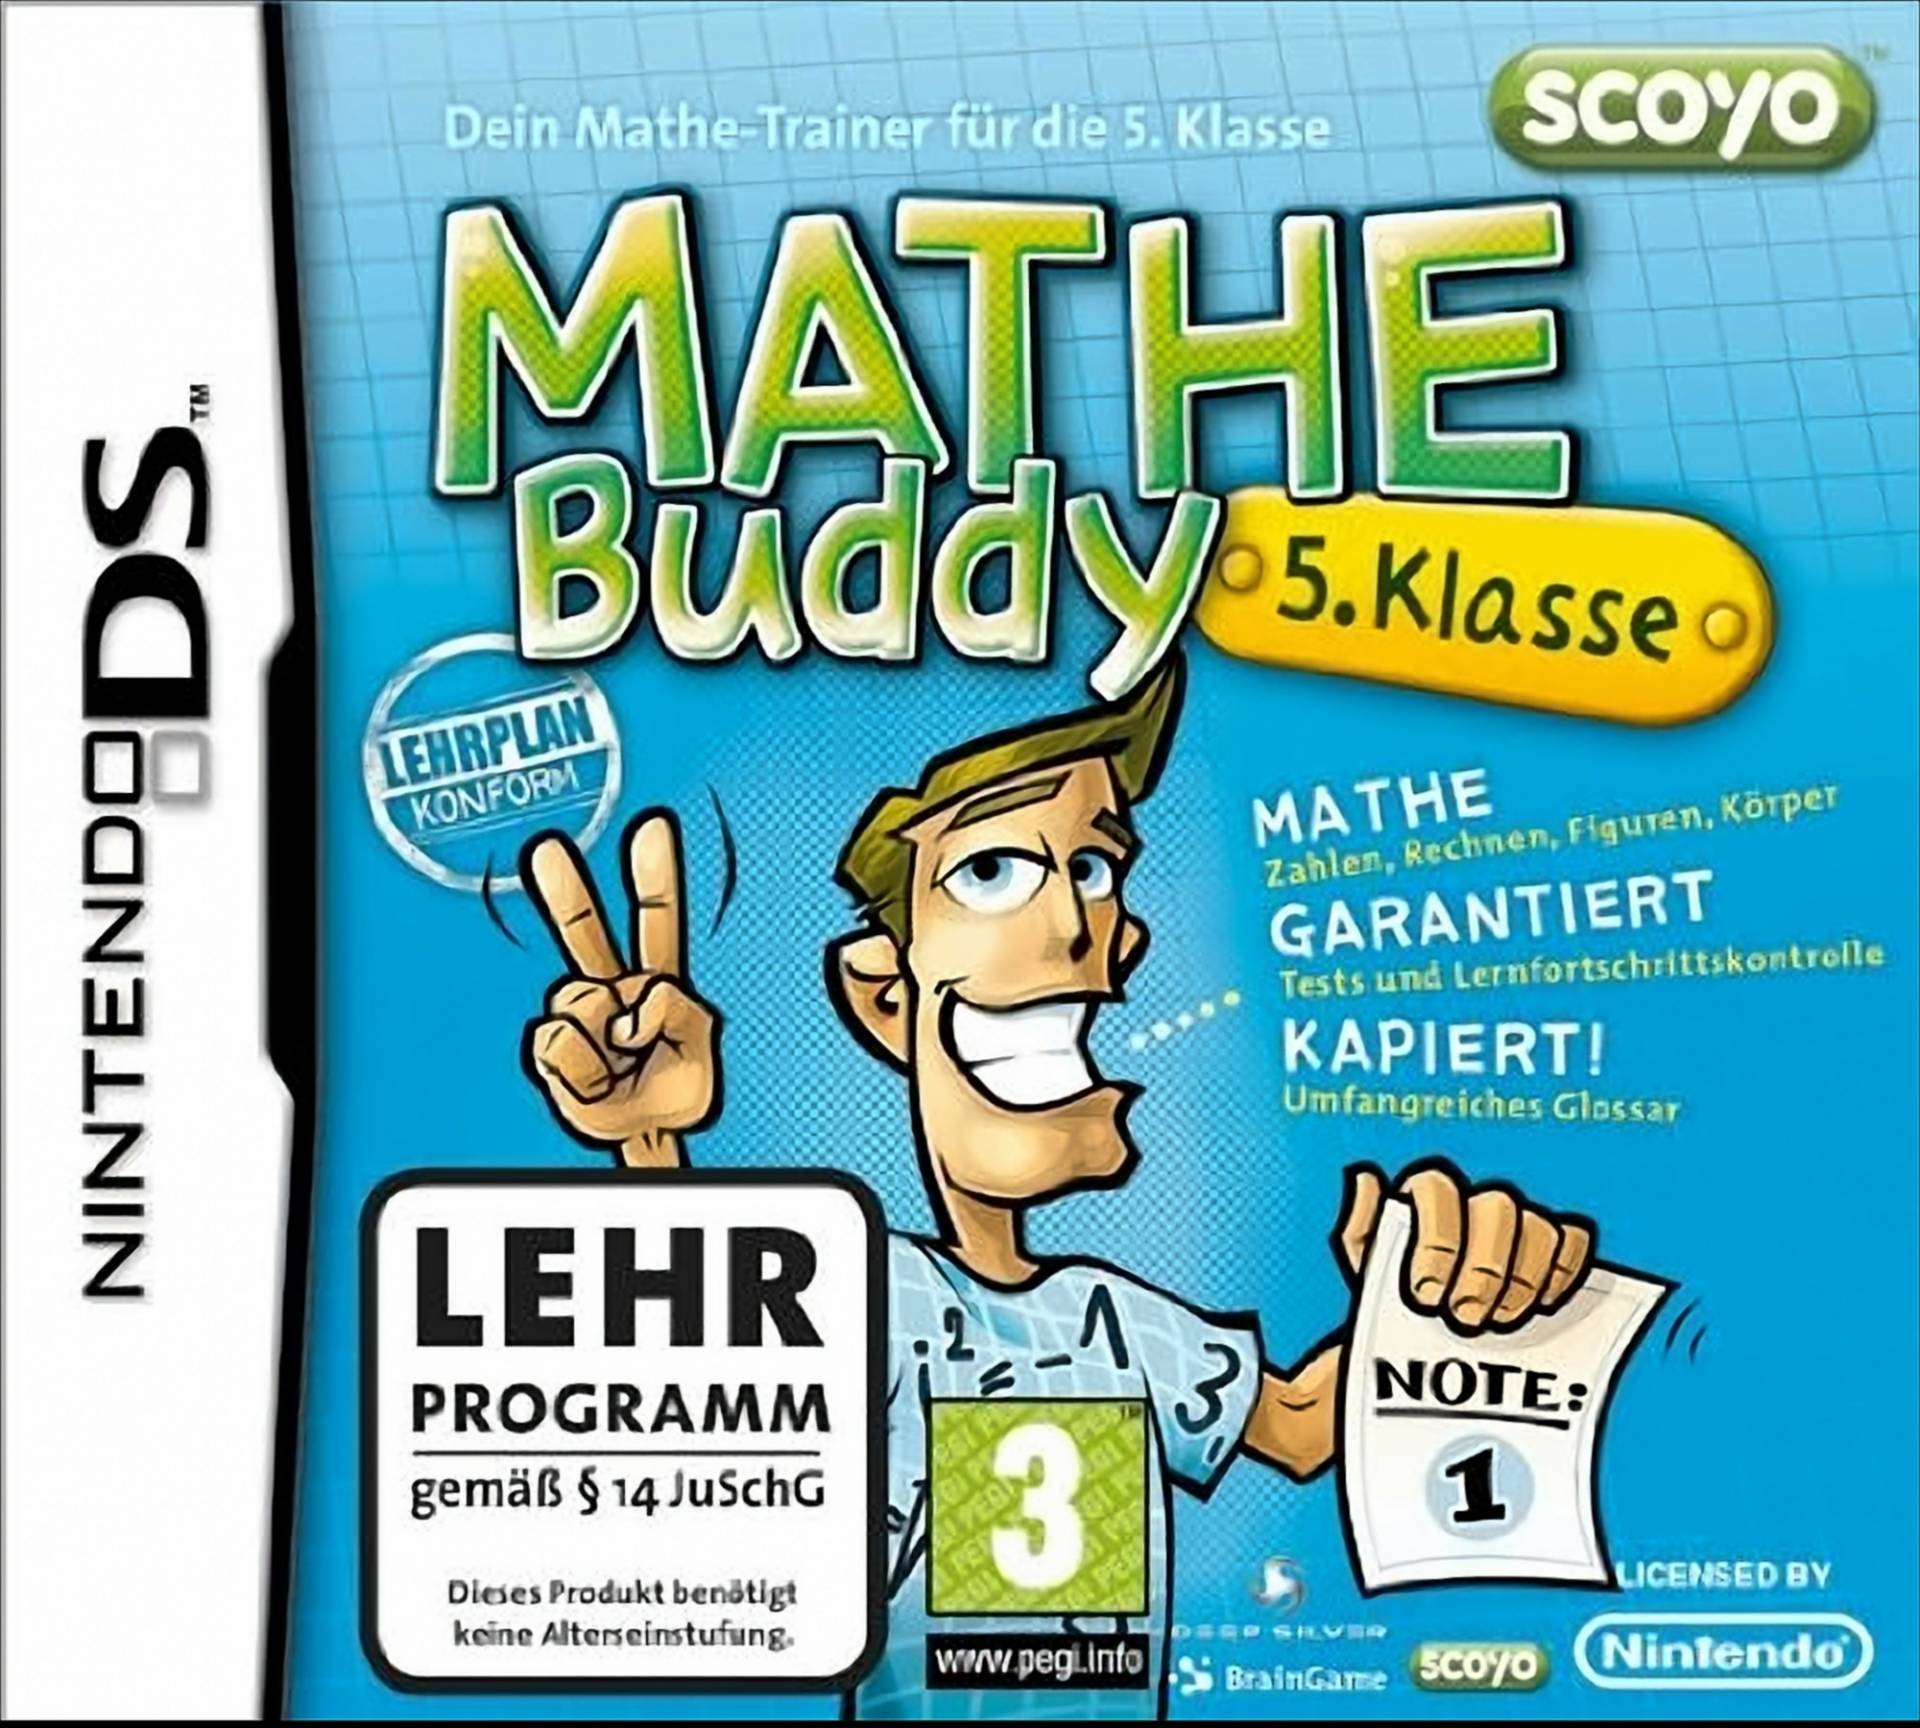 Mathe Buddy 5. Klasse von Brain Games